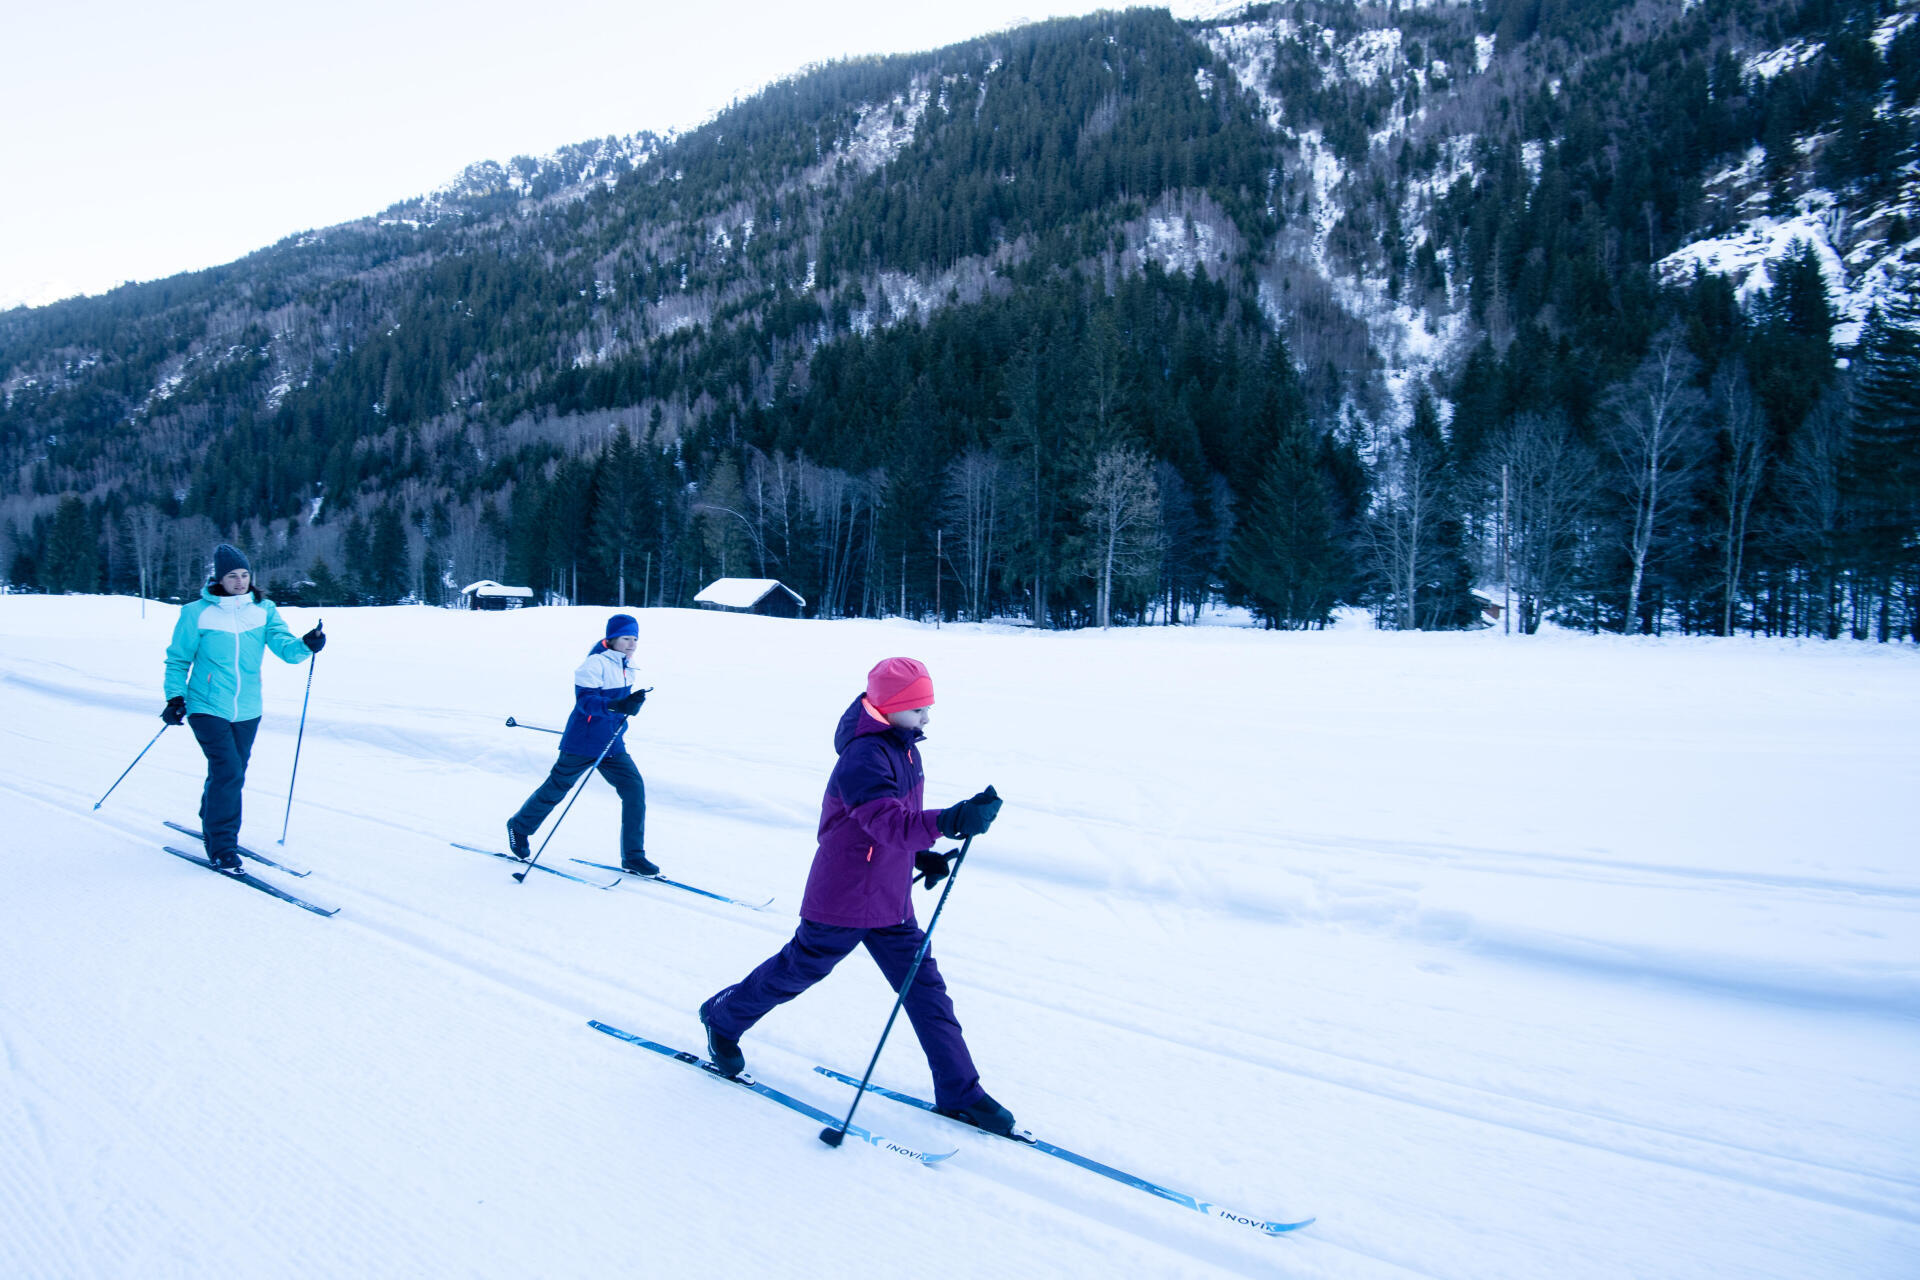 Le ski : endurance, cardio, agilité, gainage, tous ses bienfaits